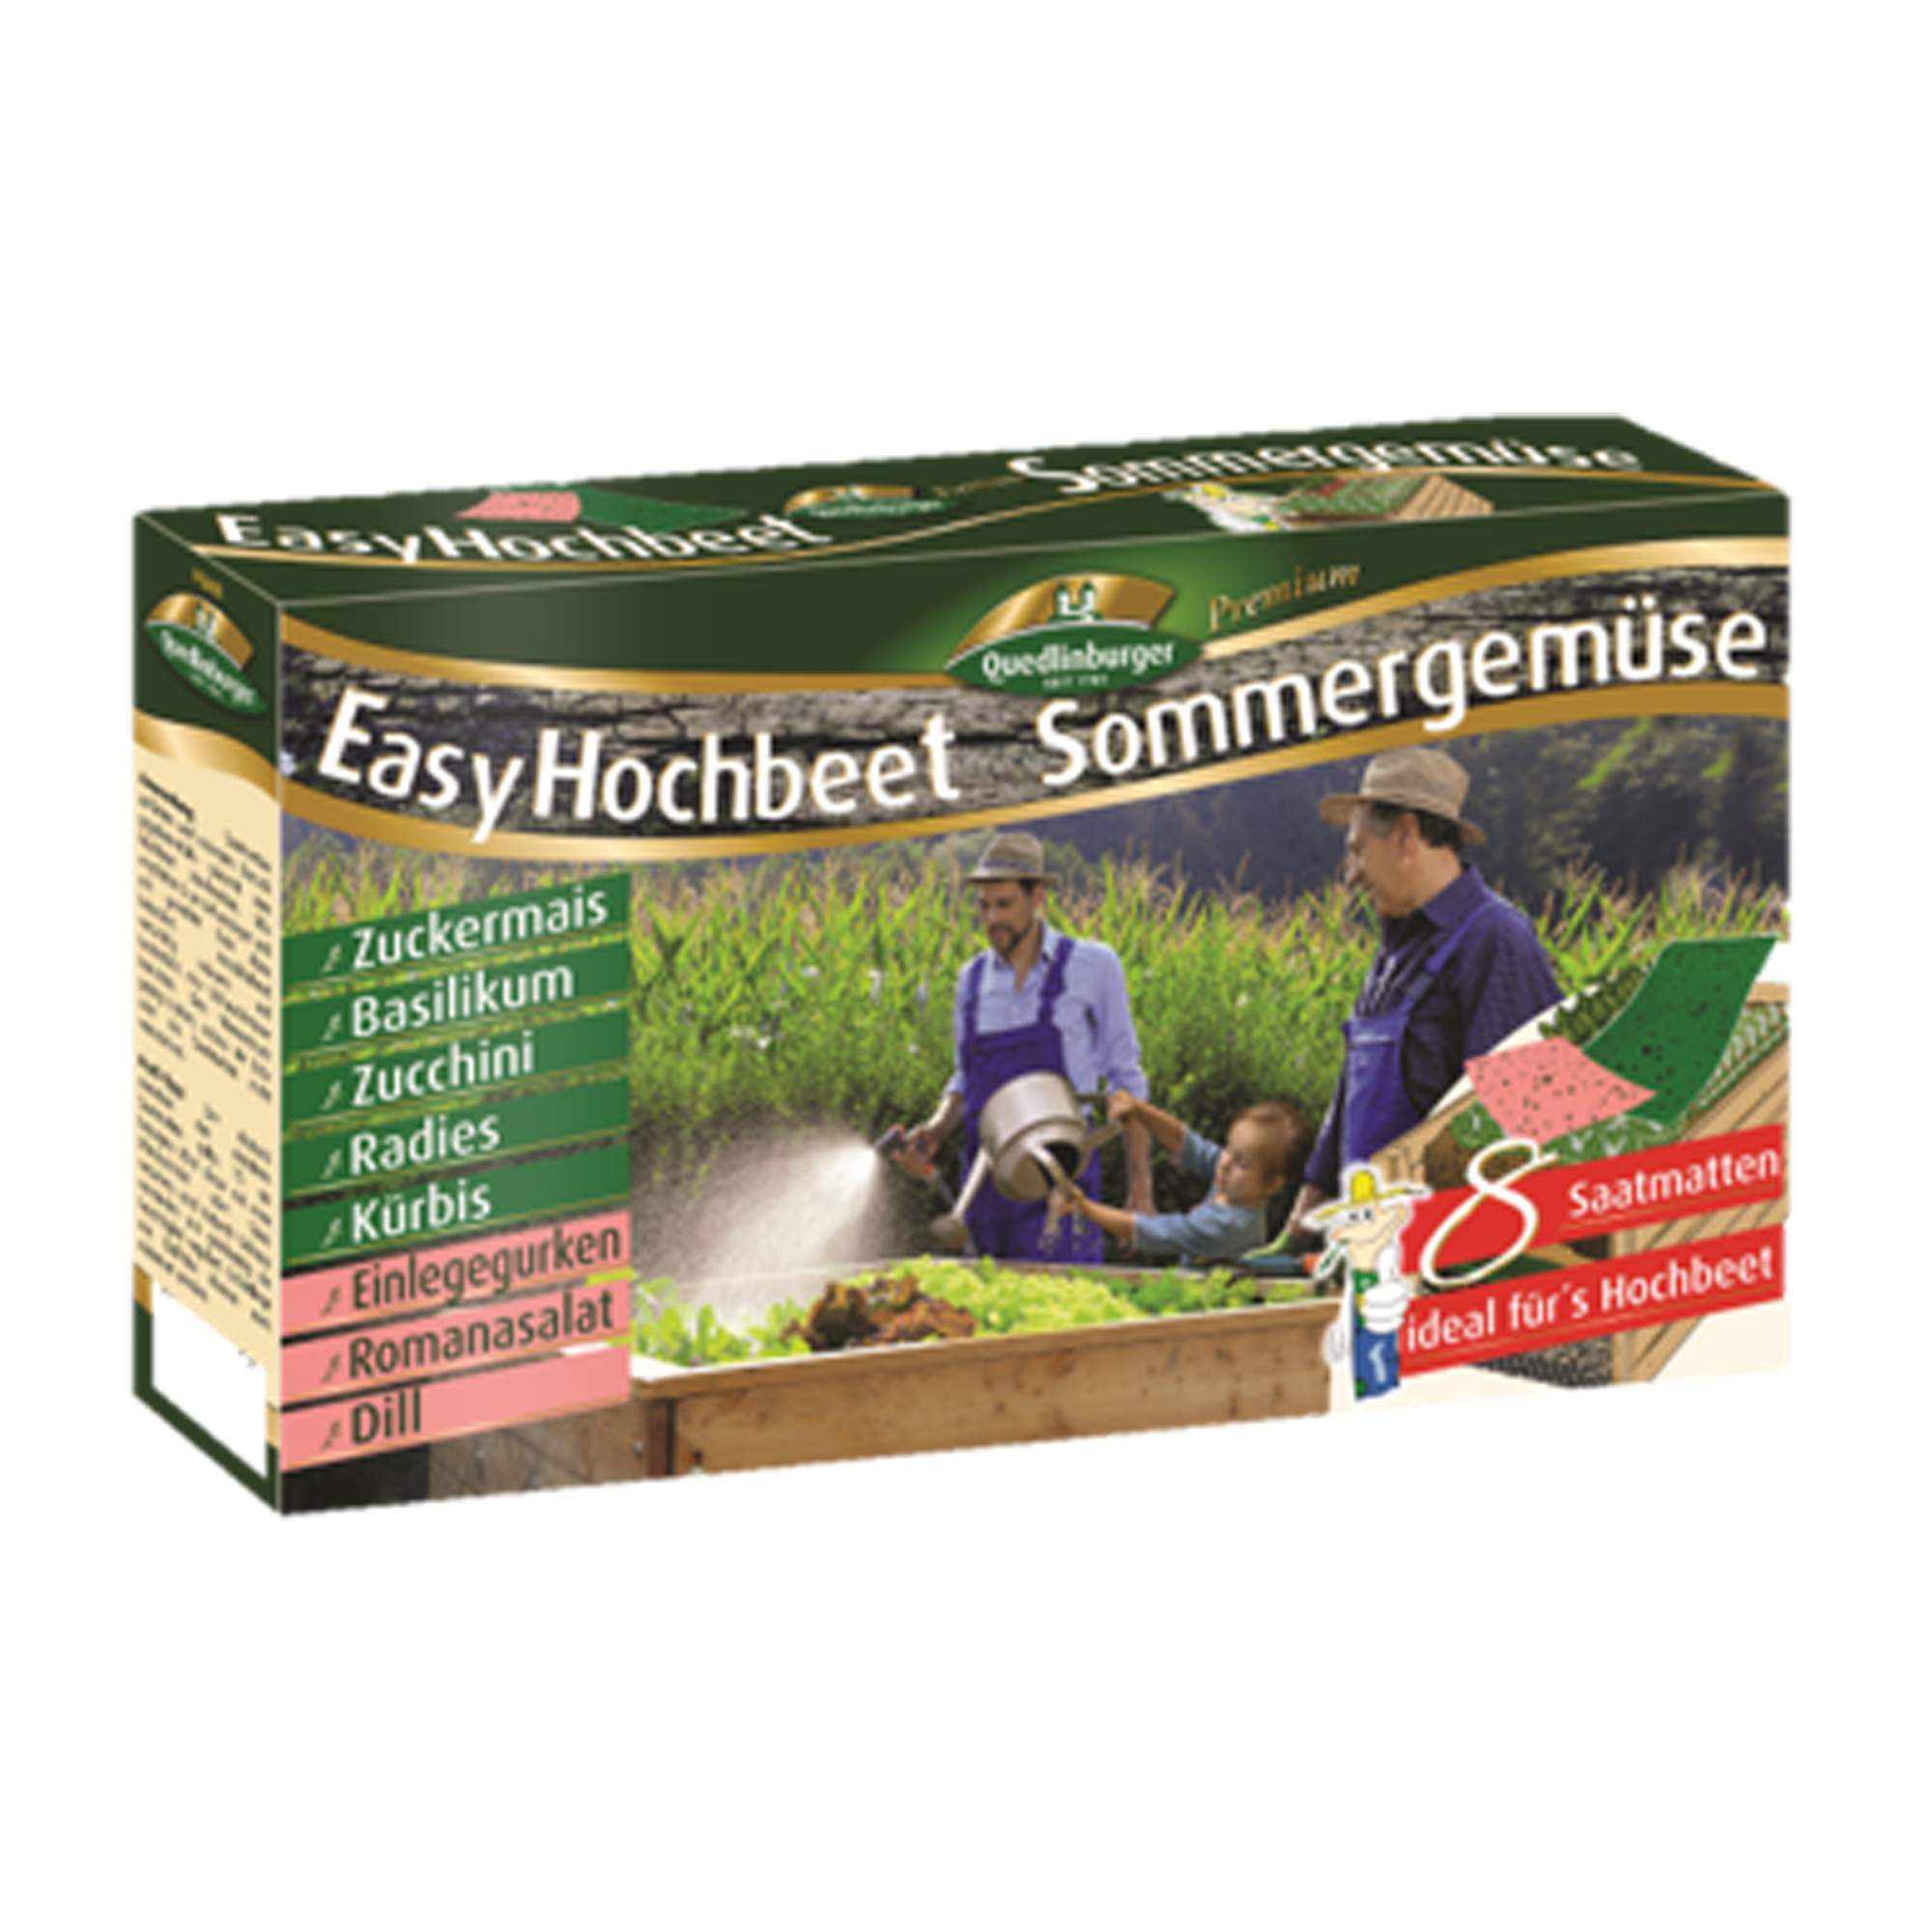 Hochbeet 'Easy Hochbeet - Sommergemüse' Saatmatten Mischung + product picture